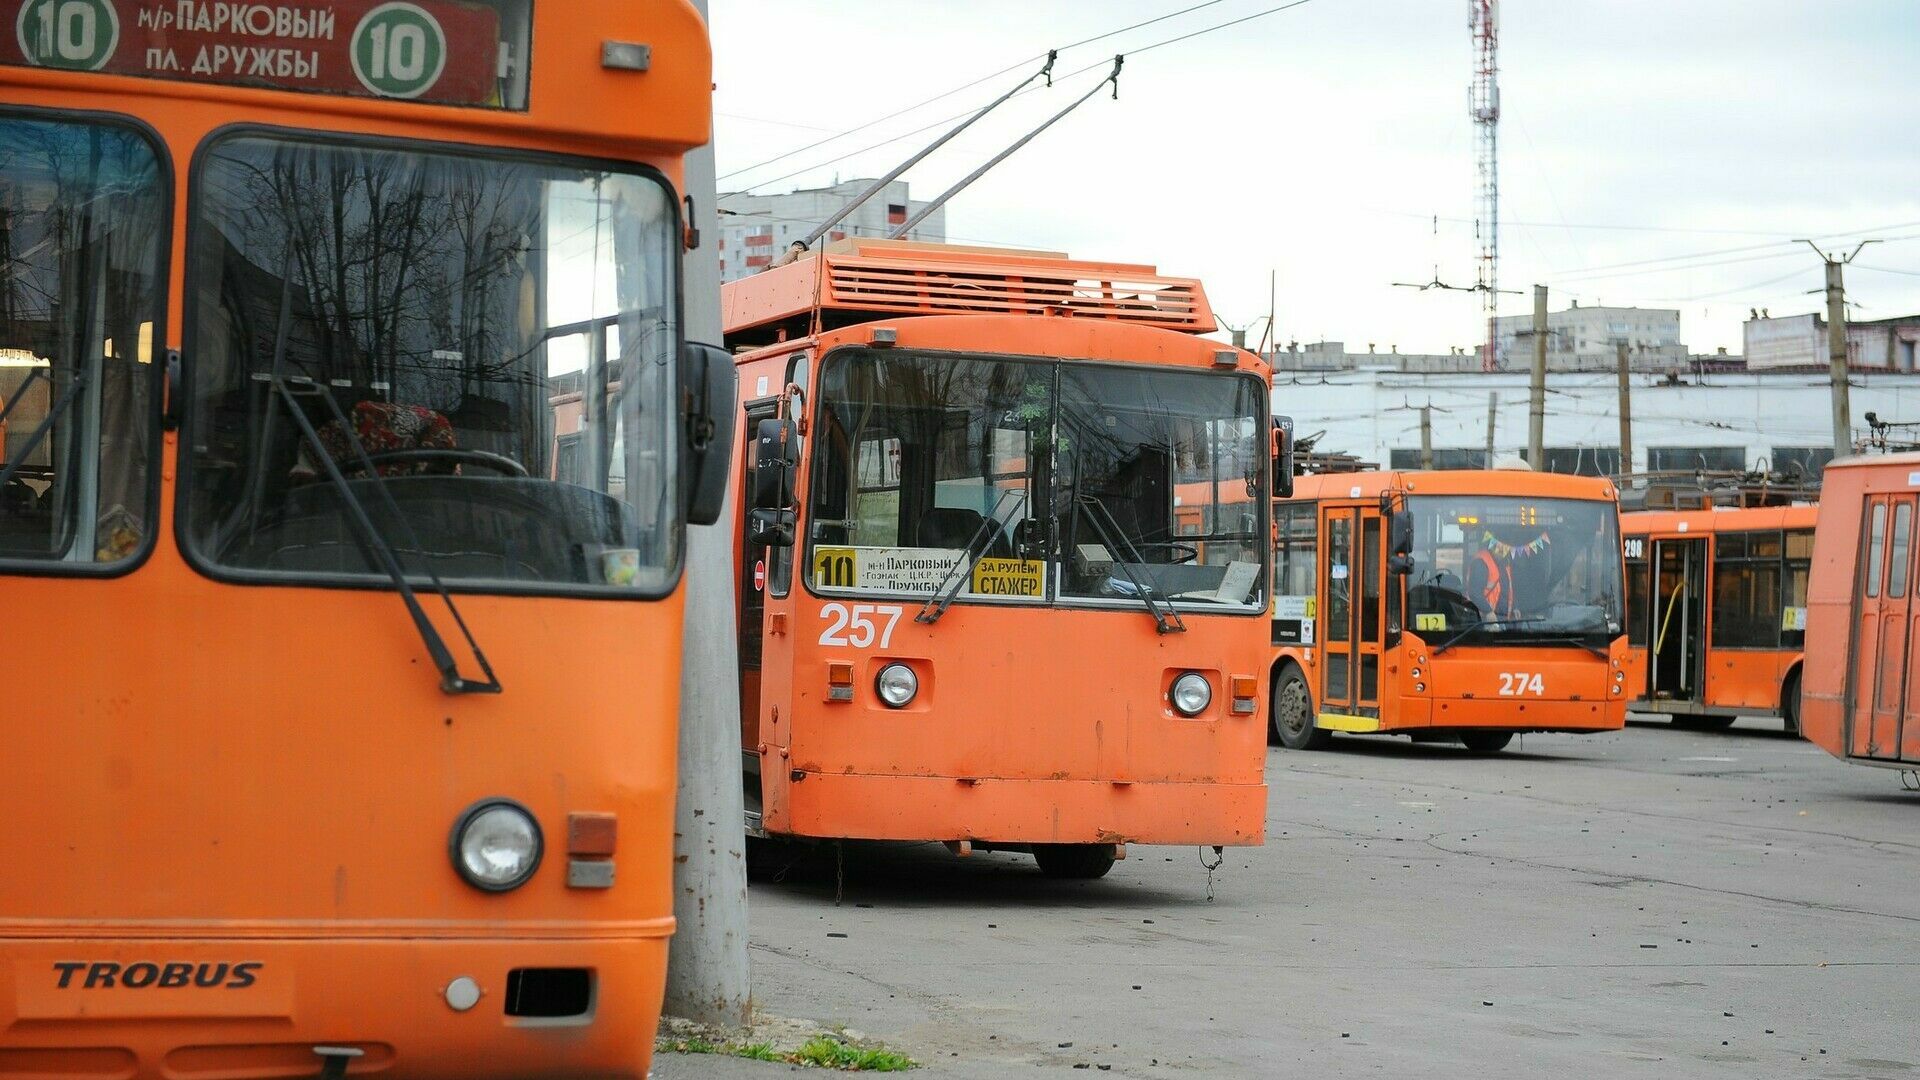 Березникам бесплатно передадут 15 пермских троллейбусов